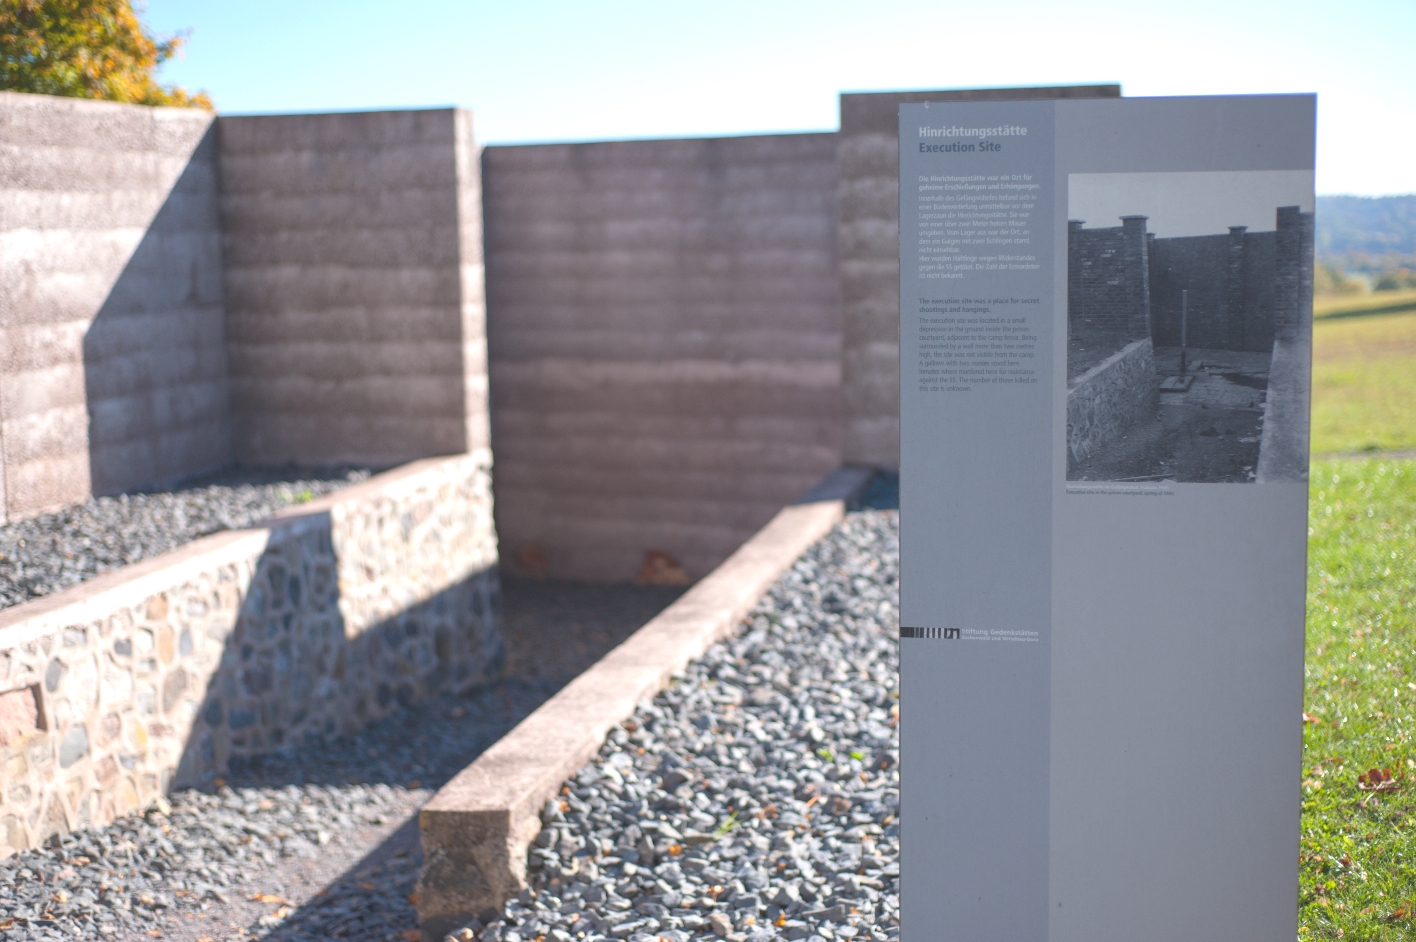 Im Vordergrund ist auf der rechten Seite die Informationstafel an der Hinrichtungsstätte zu sehen, auf der ein historisches Vergleichsbild zur heutigen Gestaltung der Hinrichtungsstätte angeboten wird. Im Hintergrund ist eine Vertiefung mit hohen Betonmauern zu sehen, die die ehemalige Hinrichtungsstätte nachbildet.